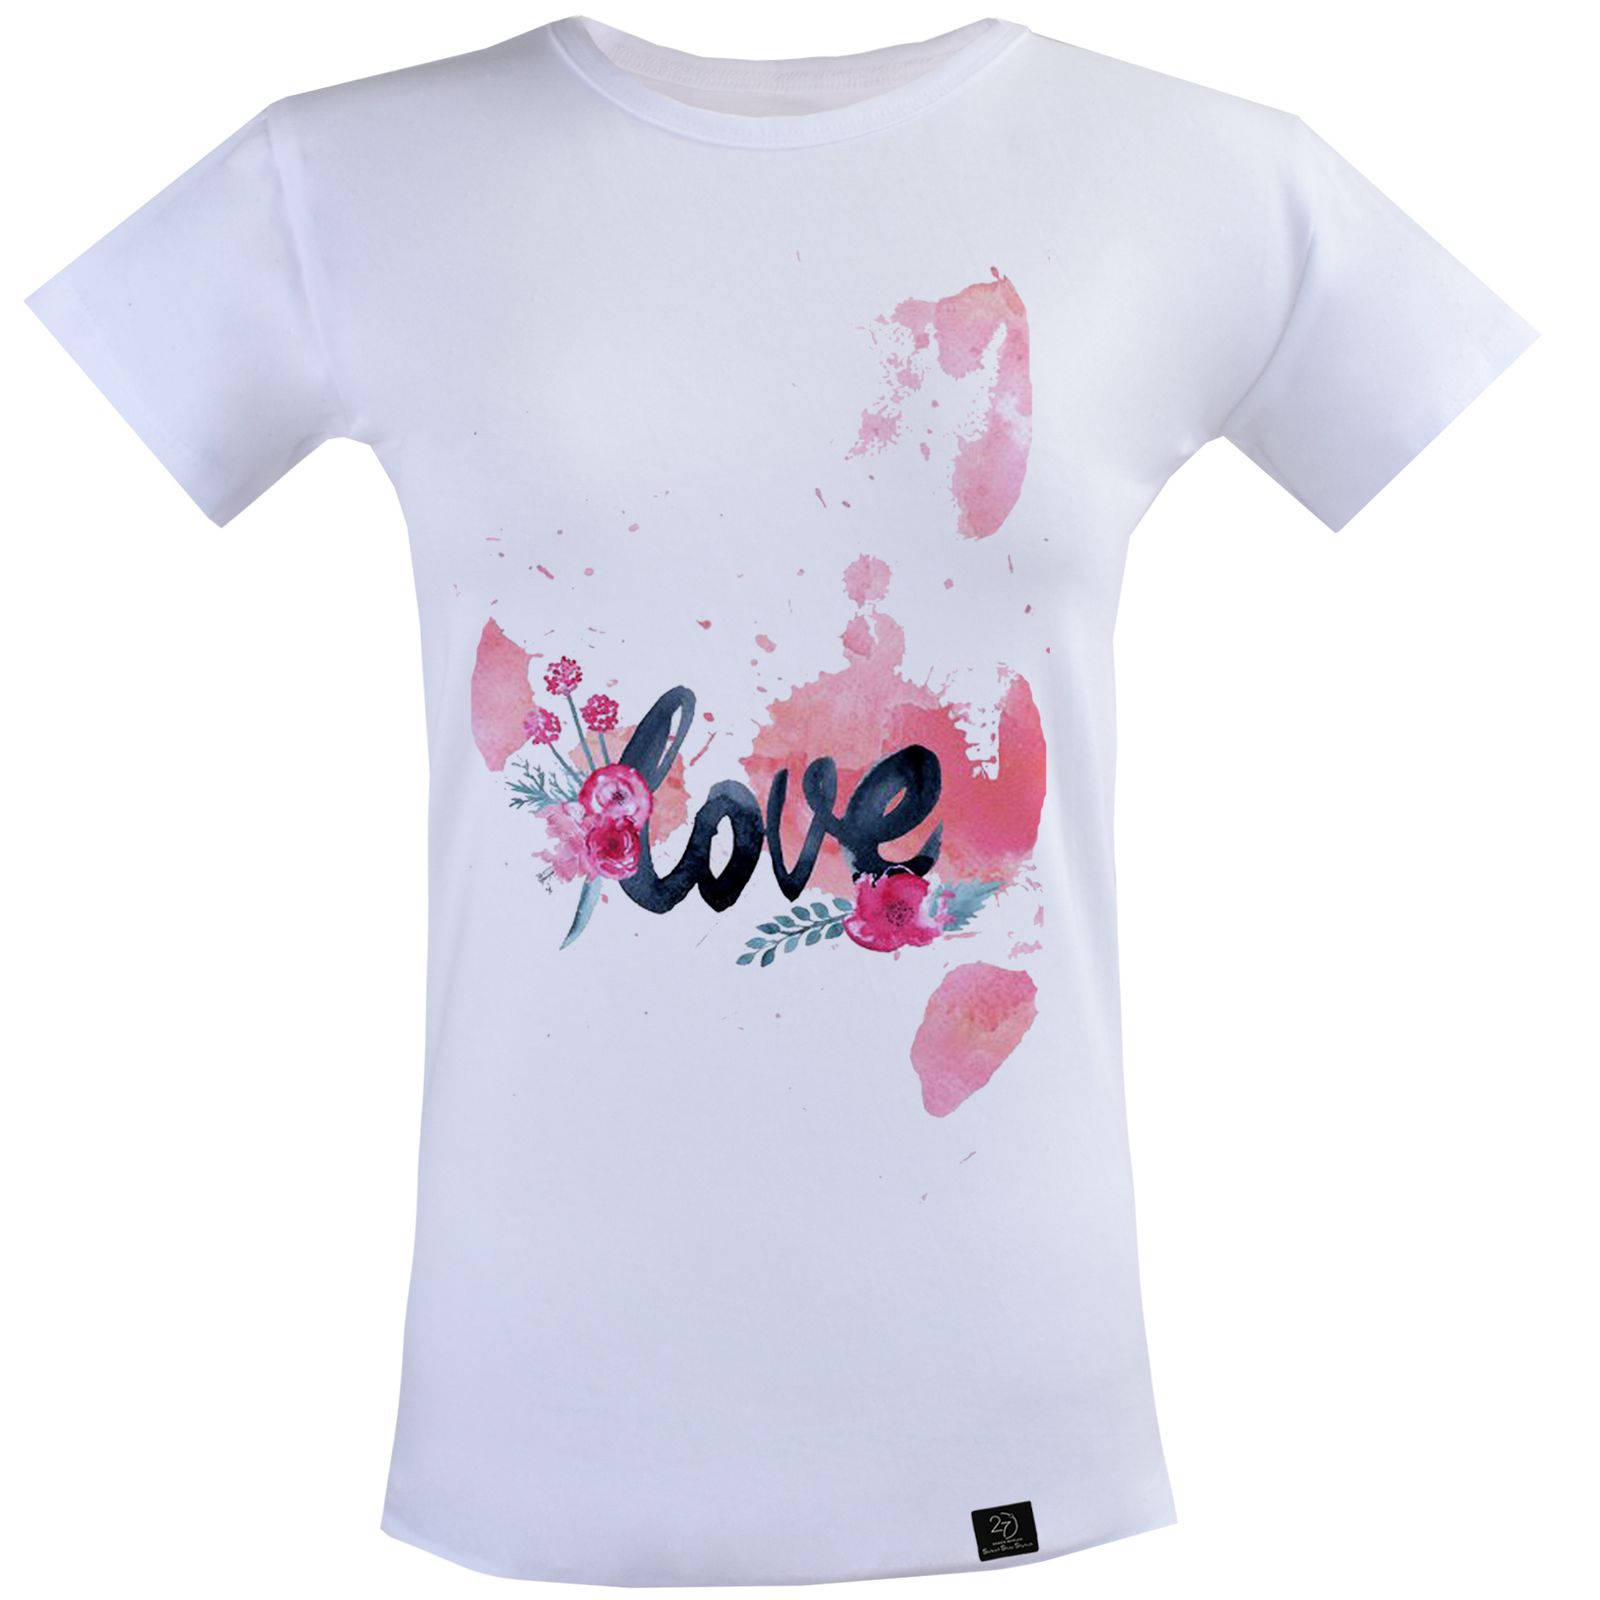 تی شرت آستین کوتاه زنانه 27 مدل LOVE کد P07 رنگ سفید -  - 1